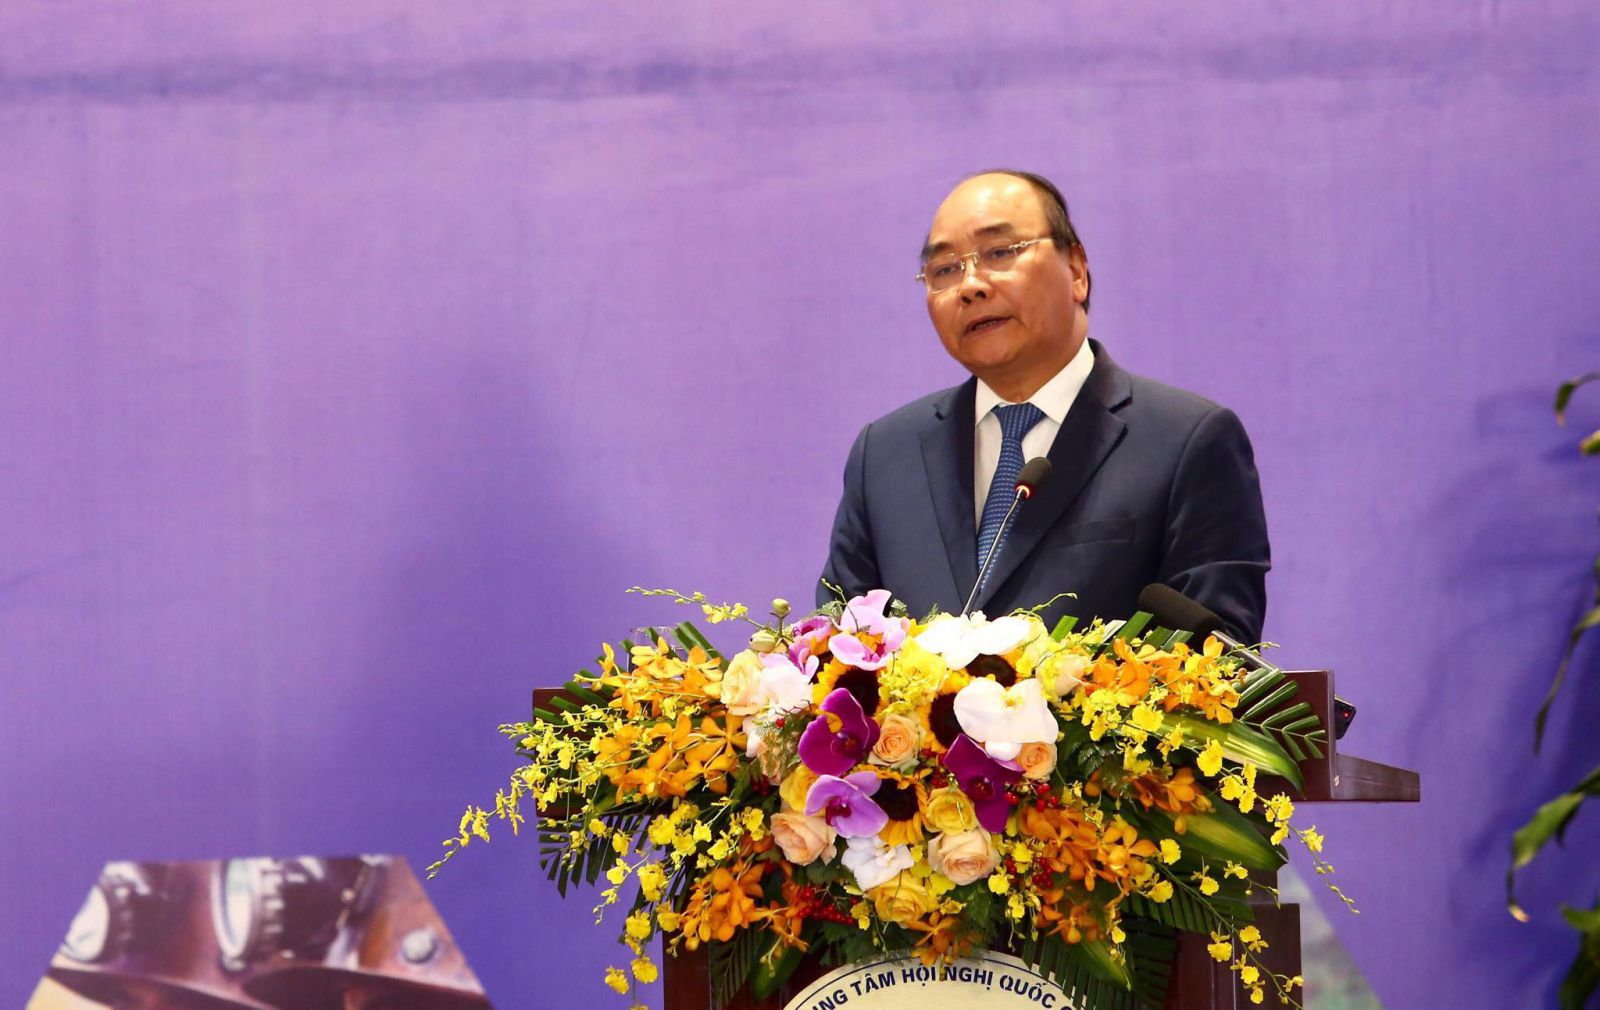 Thủ tướng Nguyễn Xuân Phúc: "Việt Nam có niềm tin thành công và khát vọng phát triển"